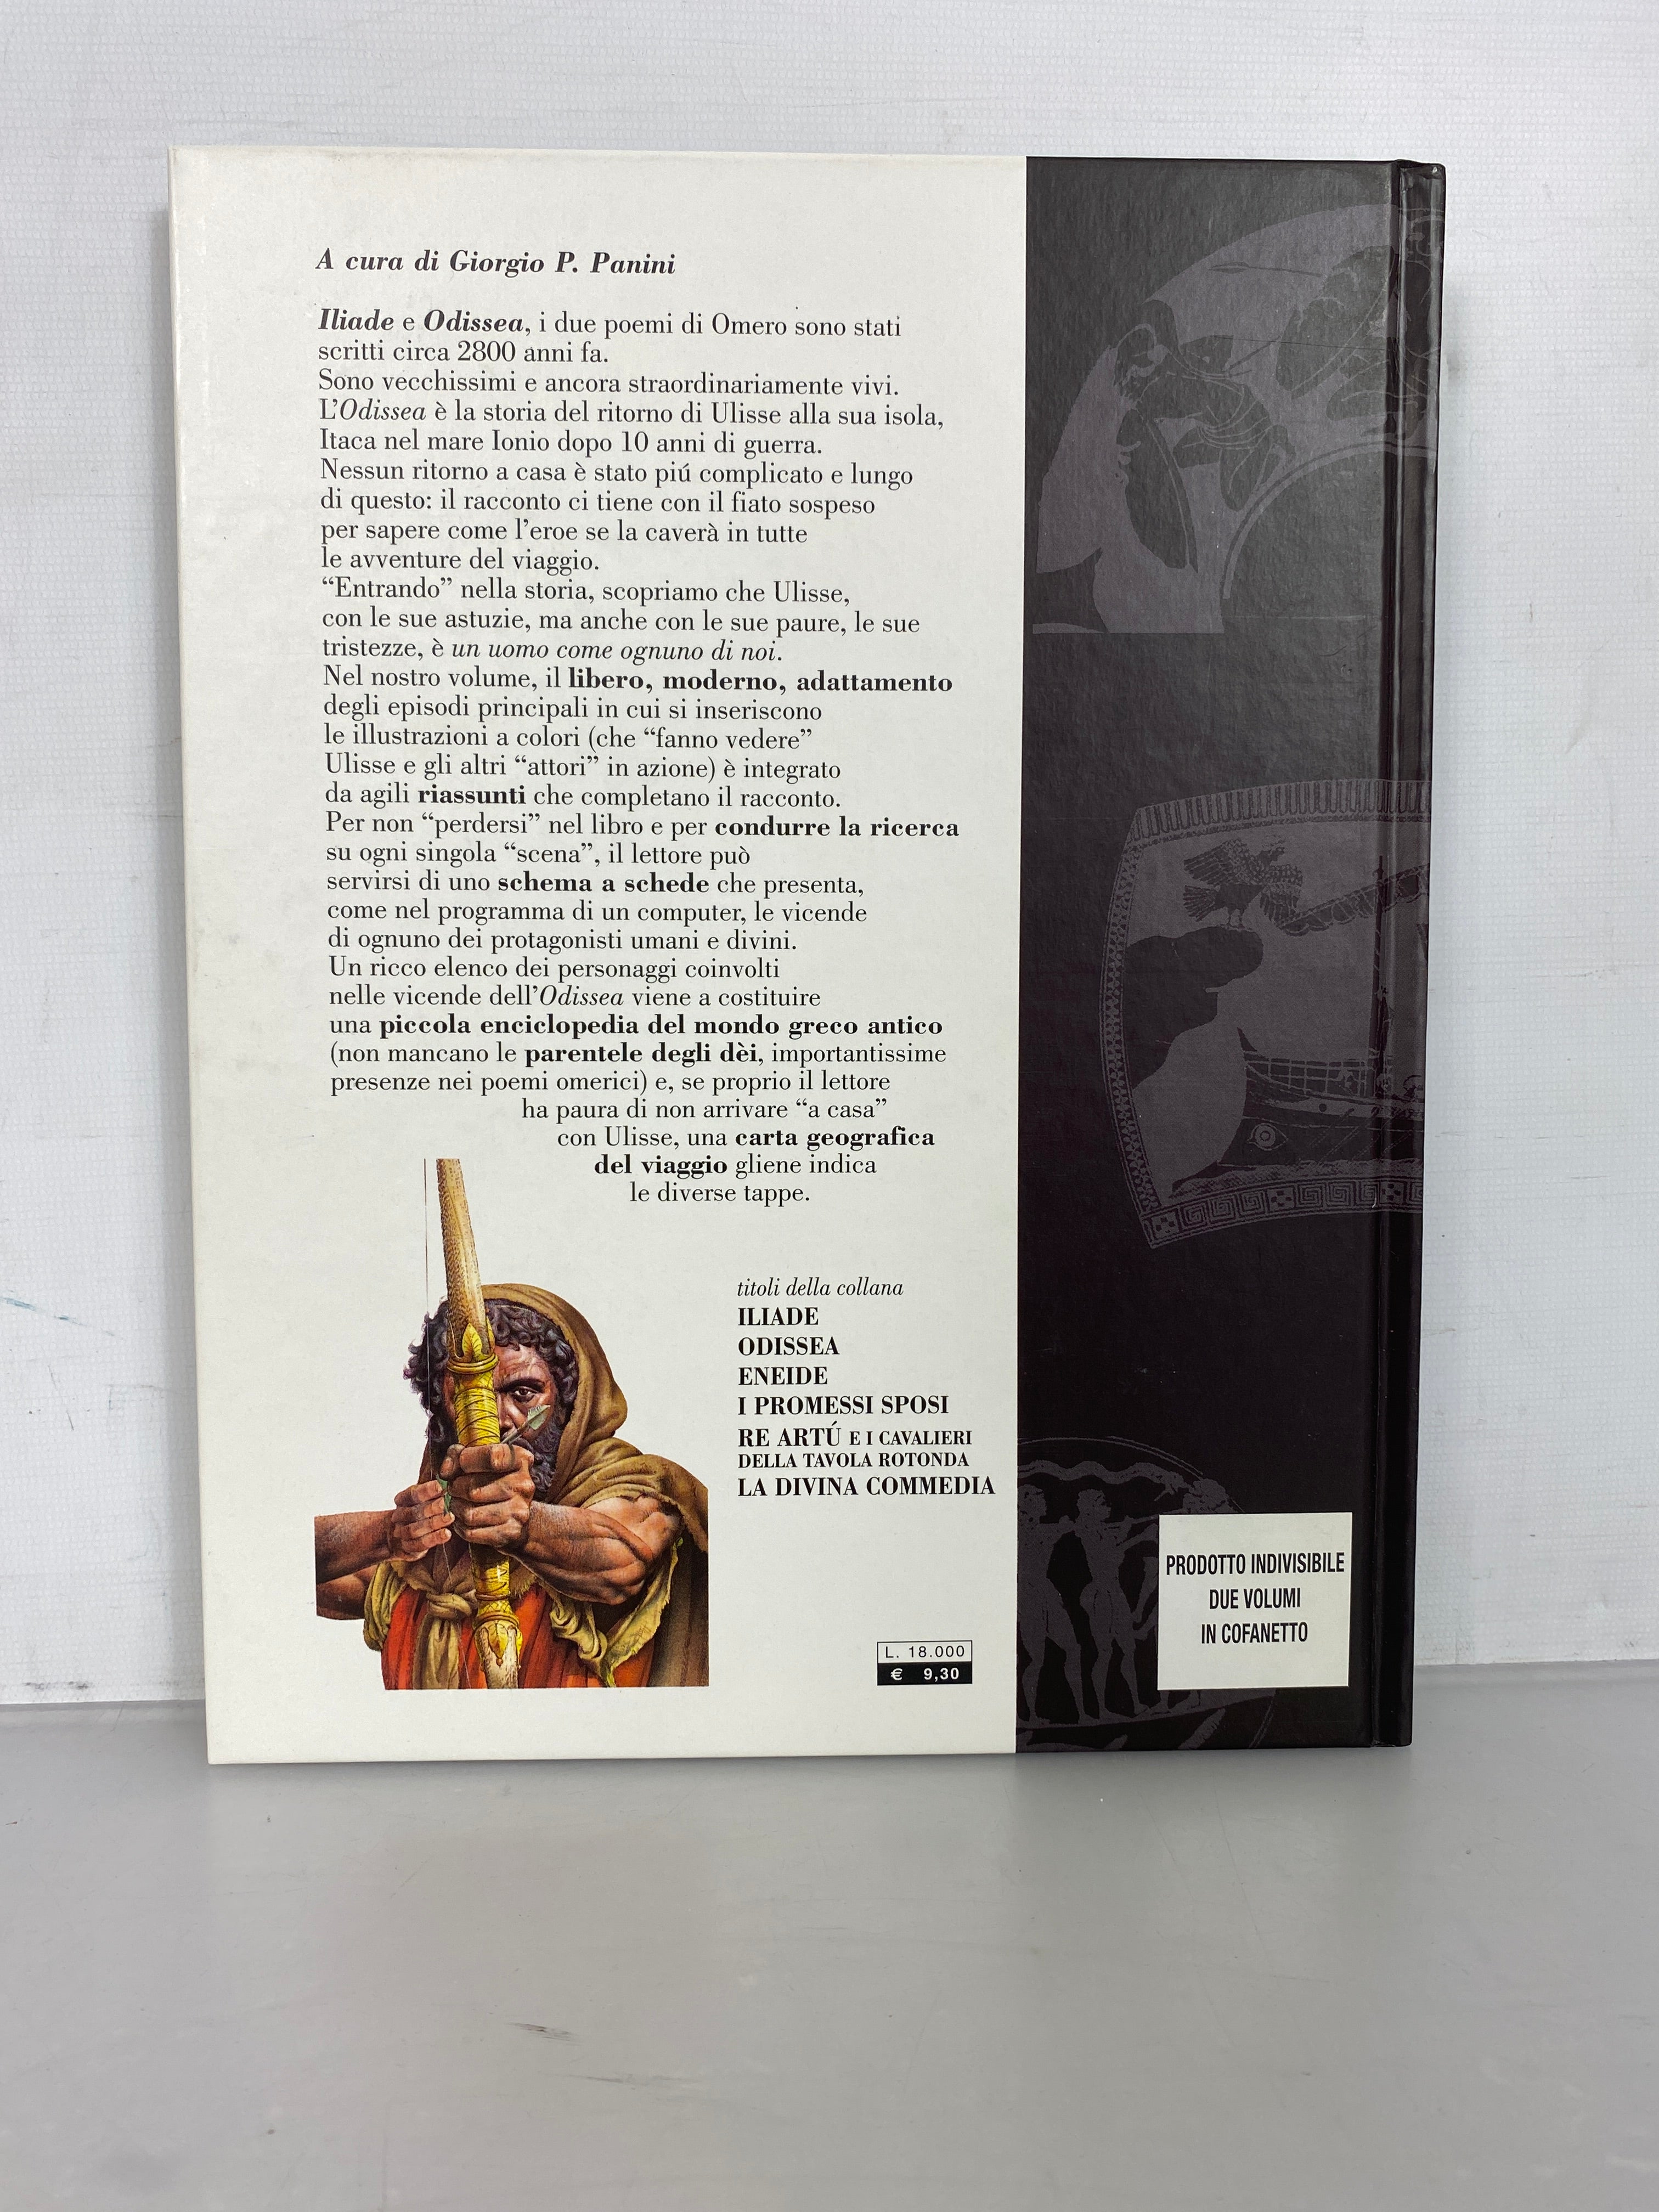 2 Vol Italian Poemi Epici Dell'Antica Grecia /Iliad & Odyssey 1996 HC Slipcase